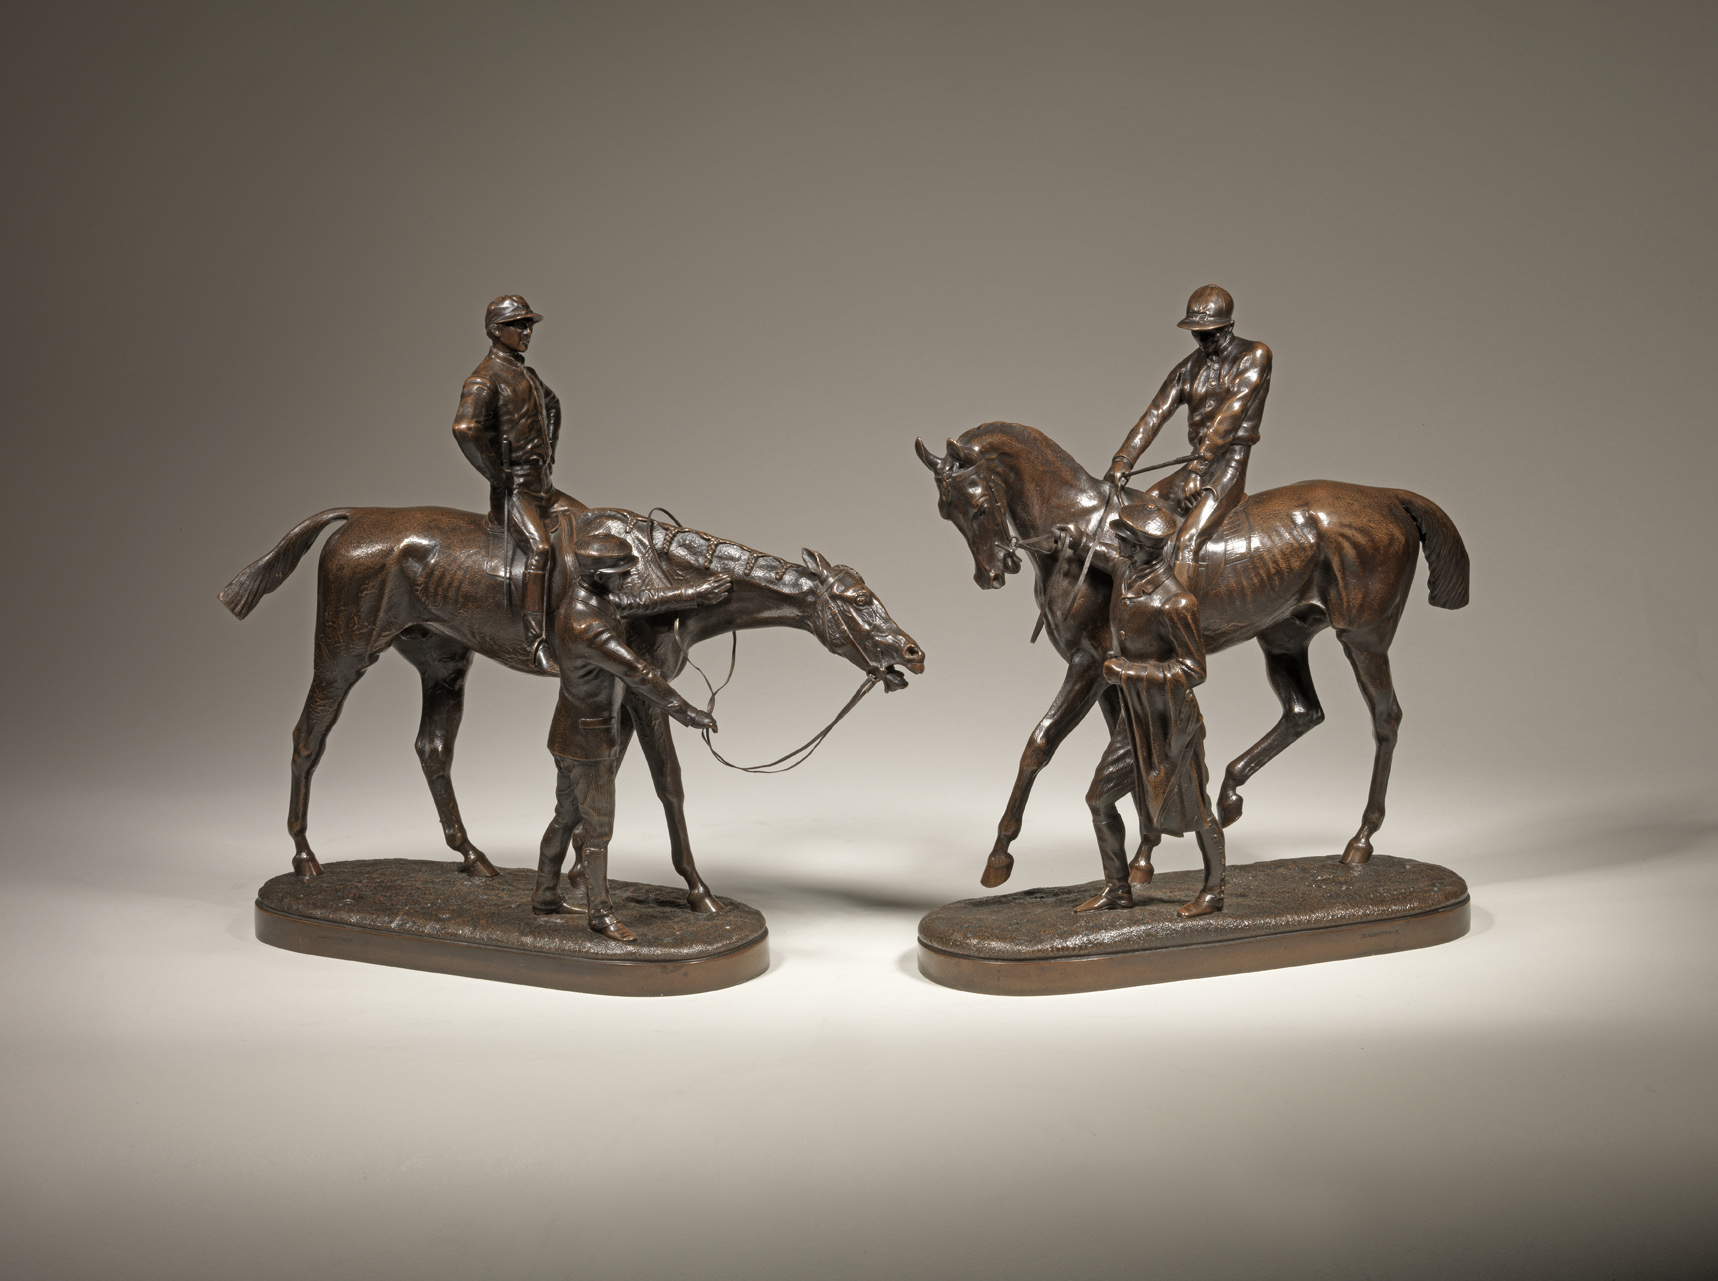 Pair of Race Horses, c. 1870